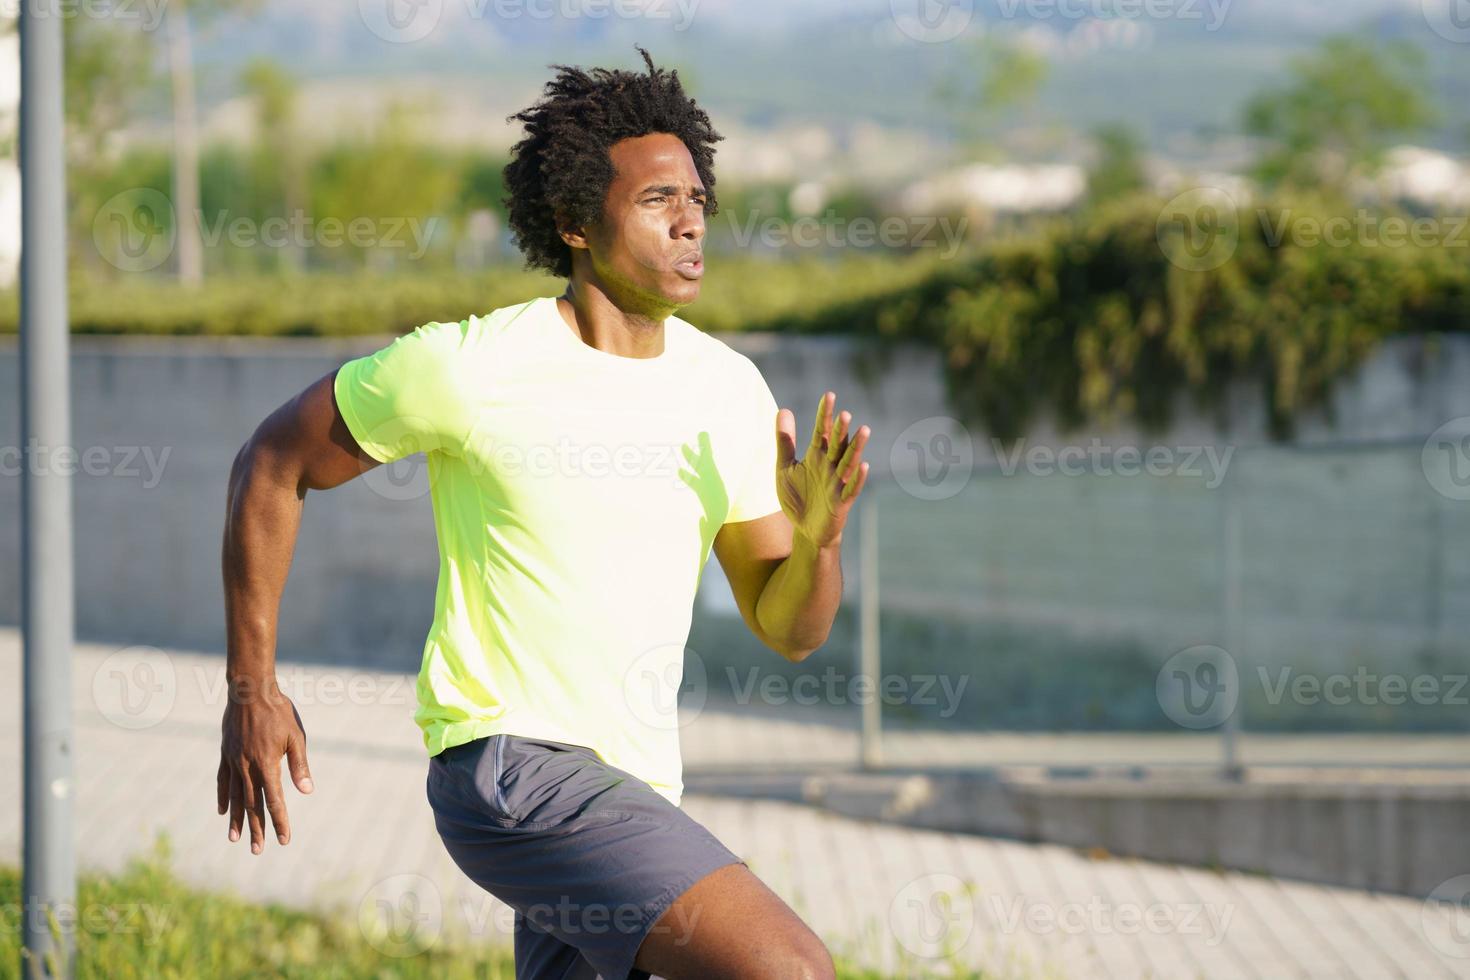 svart atletisk man springer i en urban park. foto